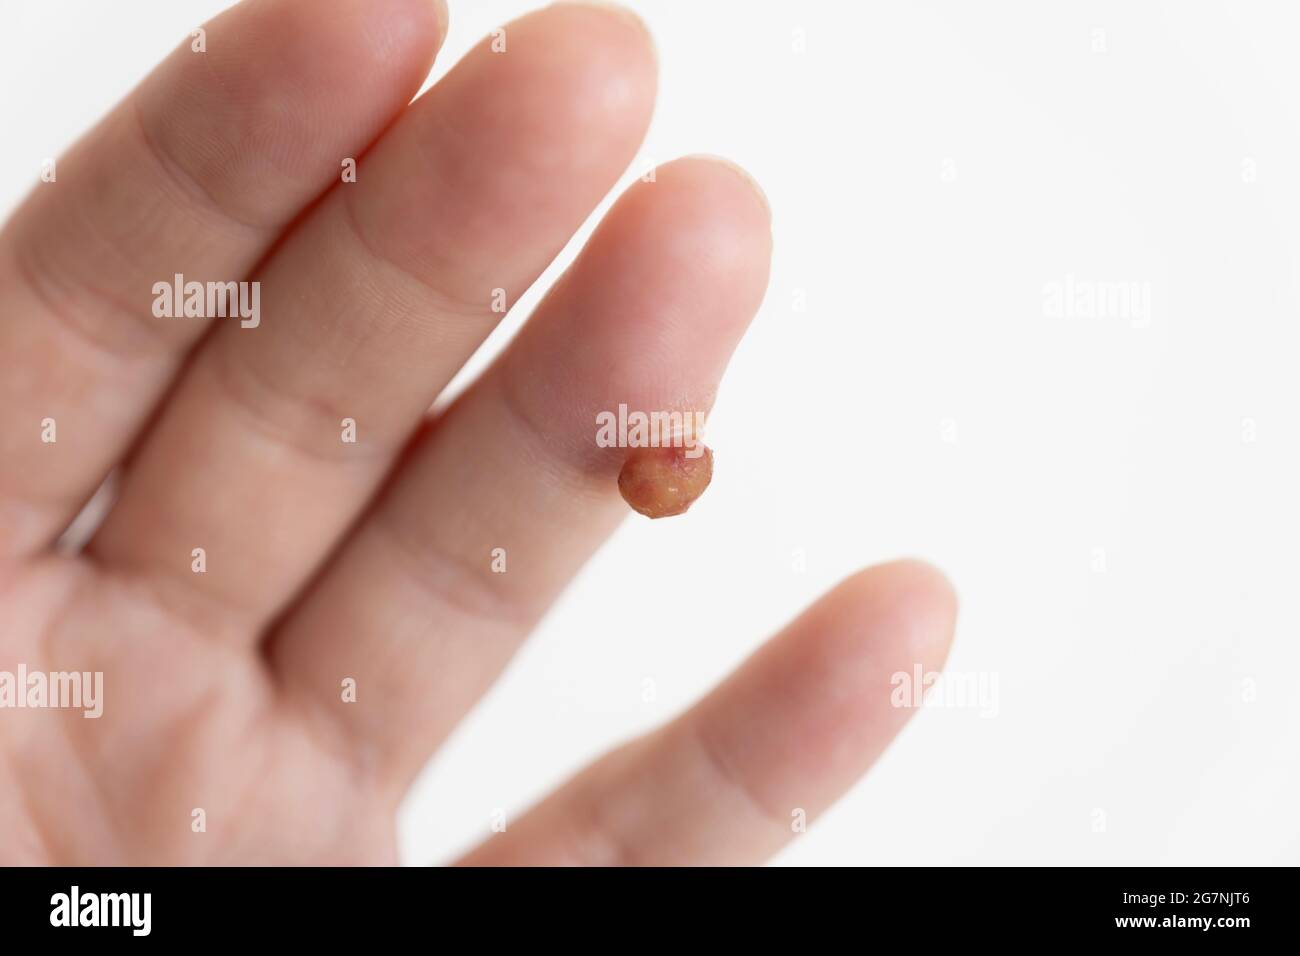 Protruding soft tissue tumor in finger on white background Stock Photo